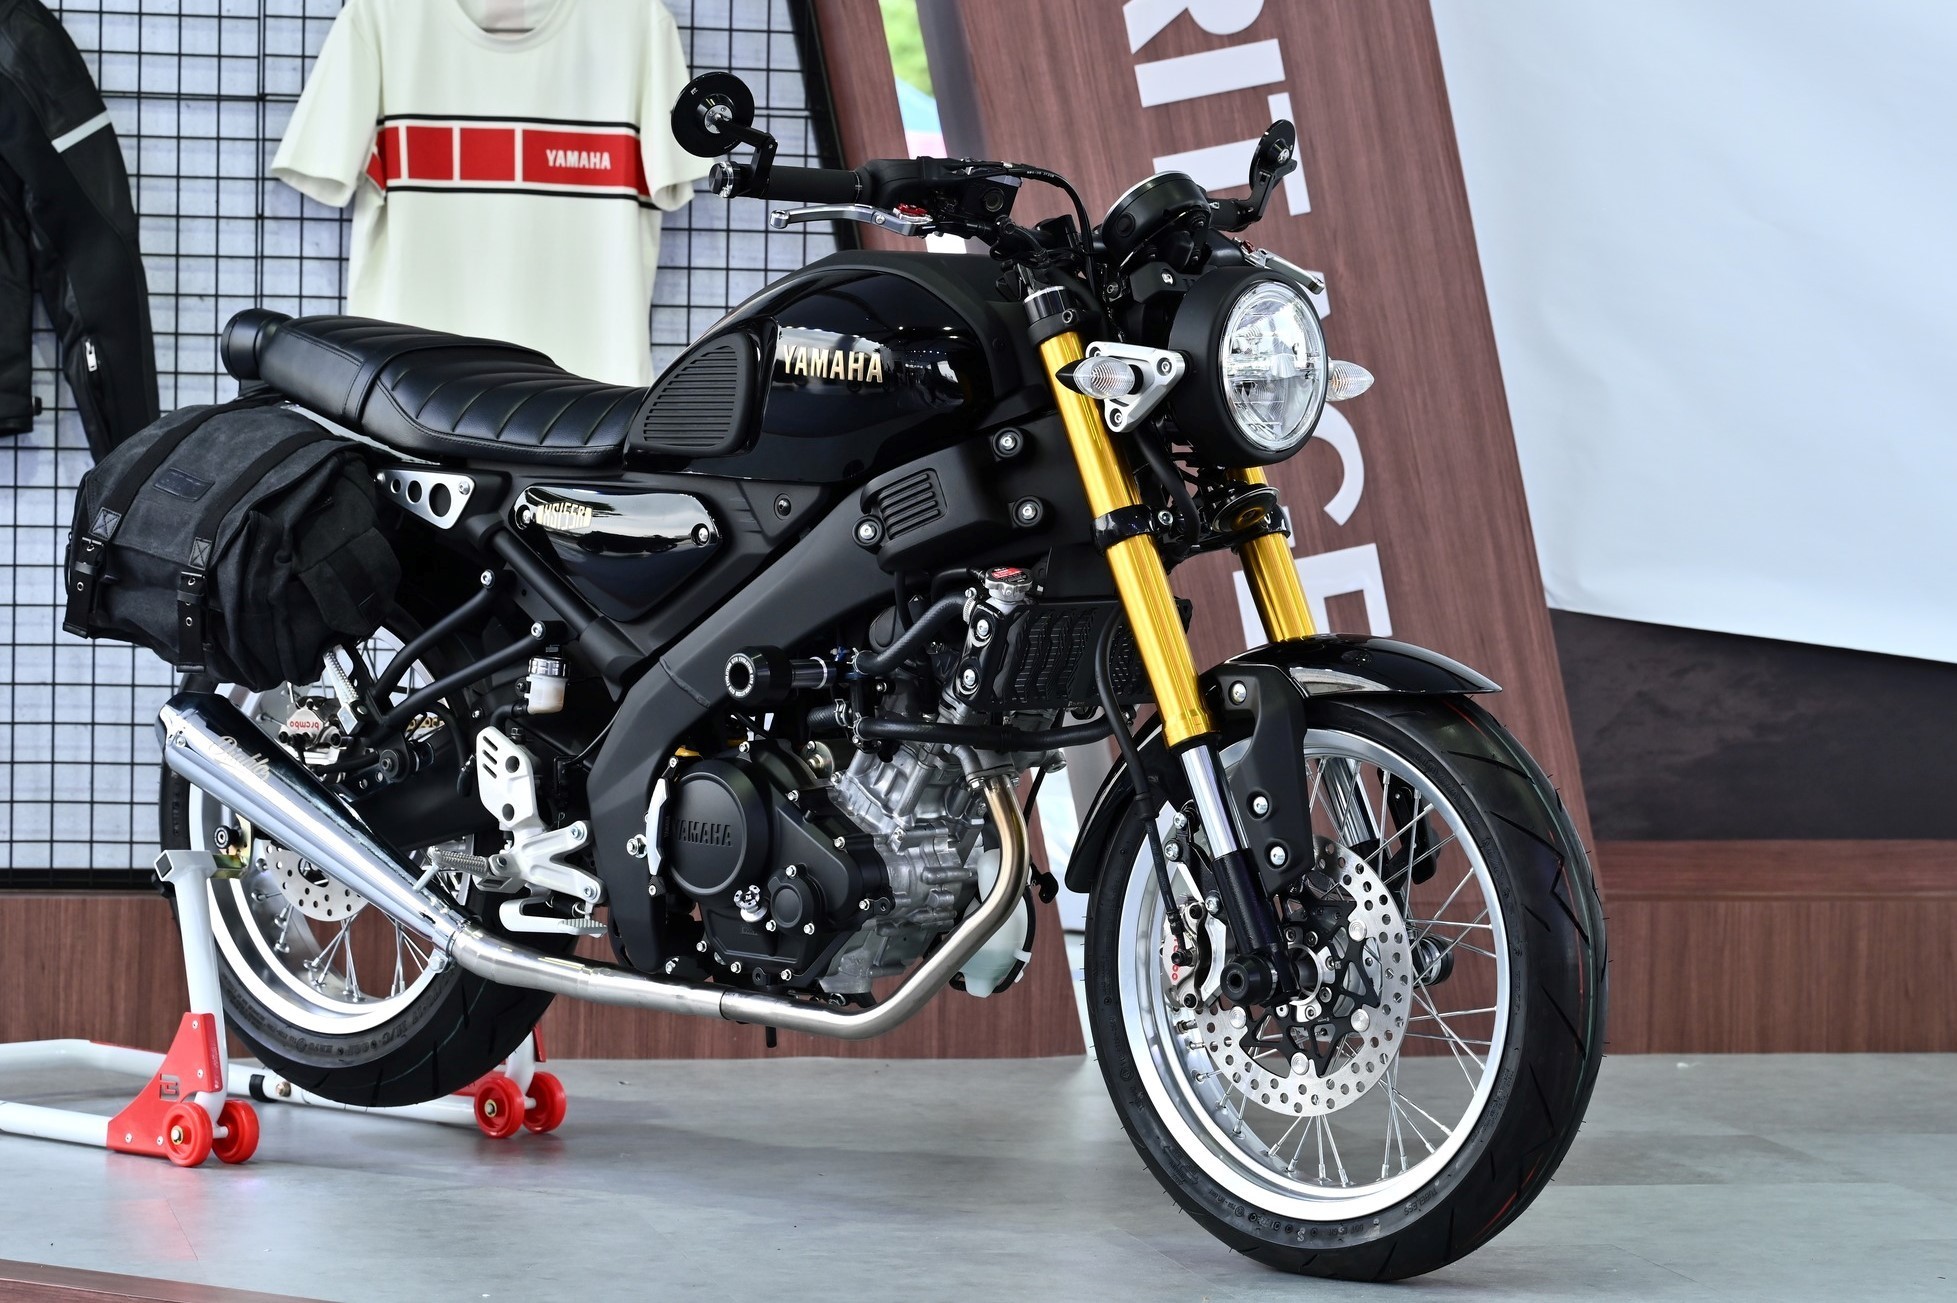 Hình ảnh xe moto Yamaha 150cc hot nhất trên thị trường